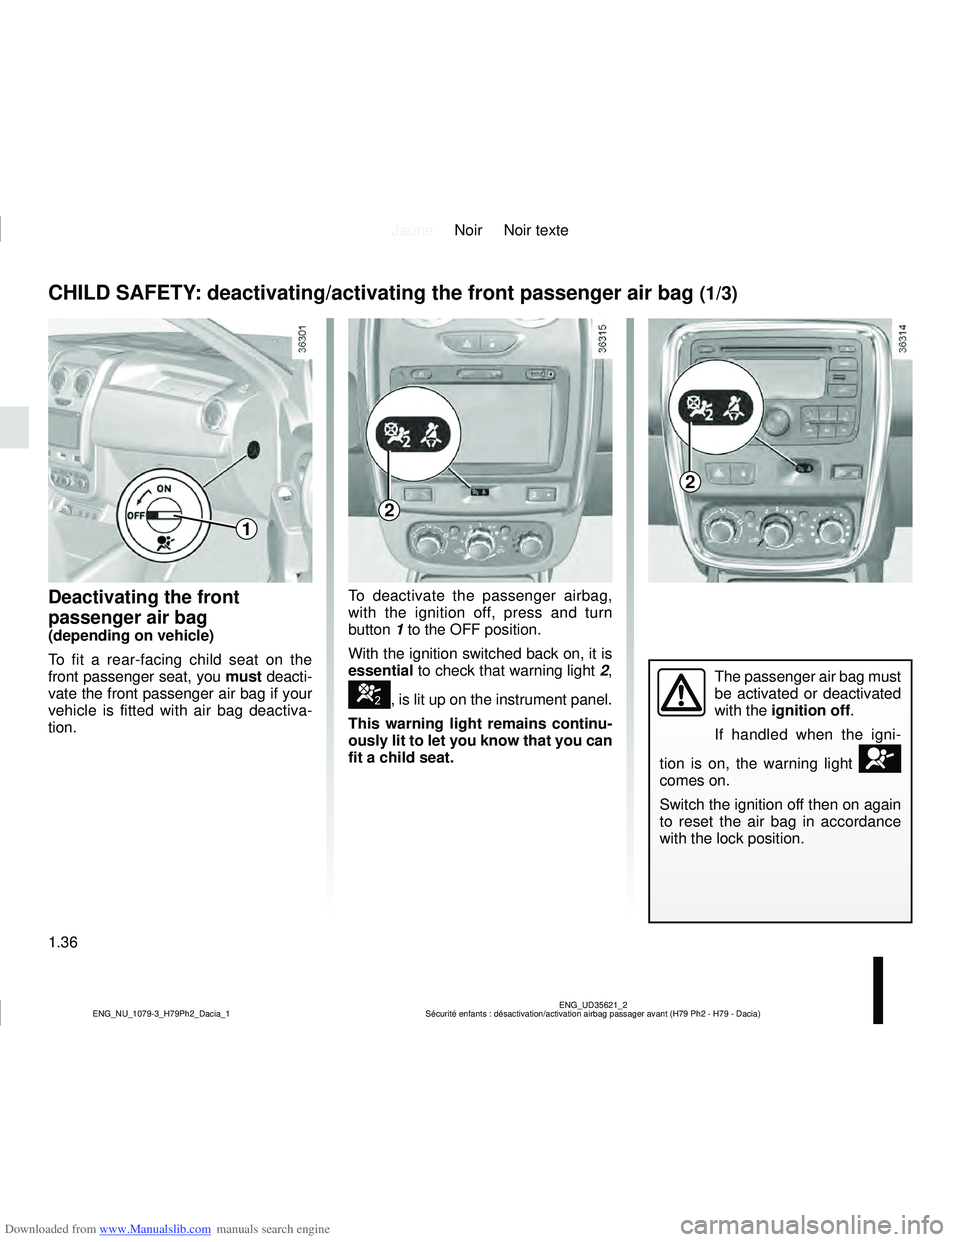 DACIA DUSTER 2015  Owners Manual Downloaded from www.Manualslib.com manuals search engine JauneNoir Noir texte
1.36
ENG_UD35621_2
Sécurité enfants : désactivation/activation airbag passager ava\
nt (H79 Ph2 - H79 - Dacia)
ENG_NU_1